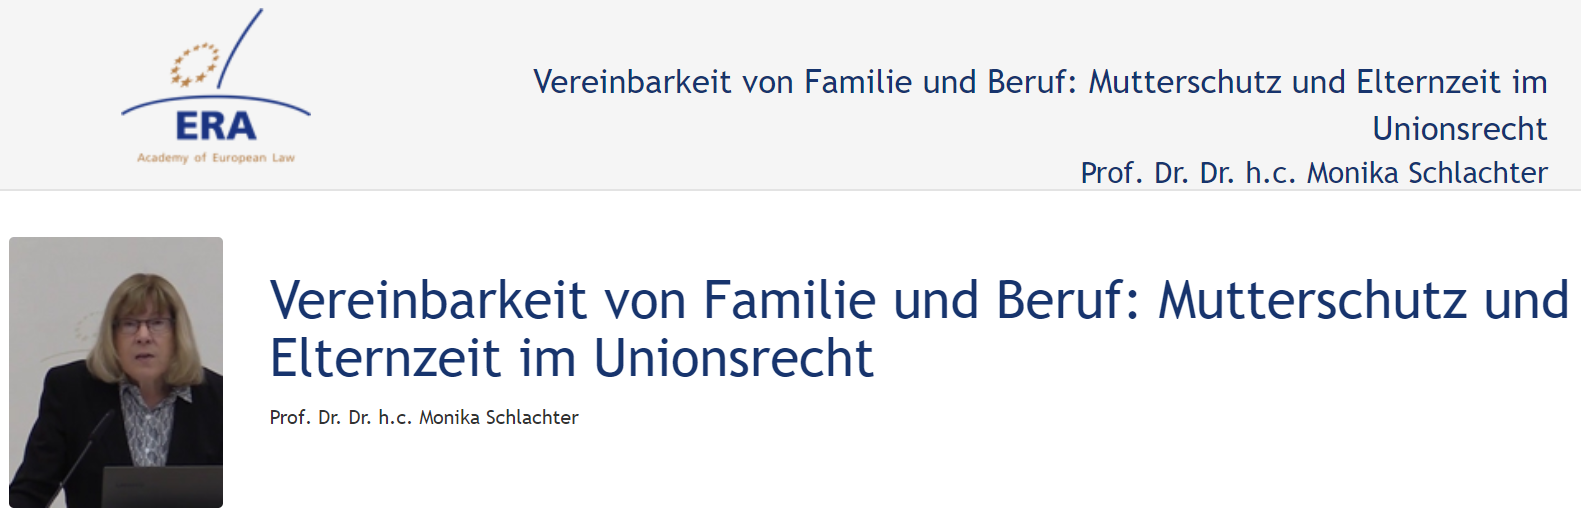 Prof. Dr. Dr. h.c. Monika Schlachter (April 2019): Vereinbarkeit von Familie und Beruf: Mutterschutz und Elternzeit im Unionsrecht